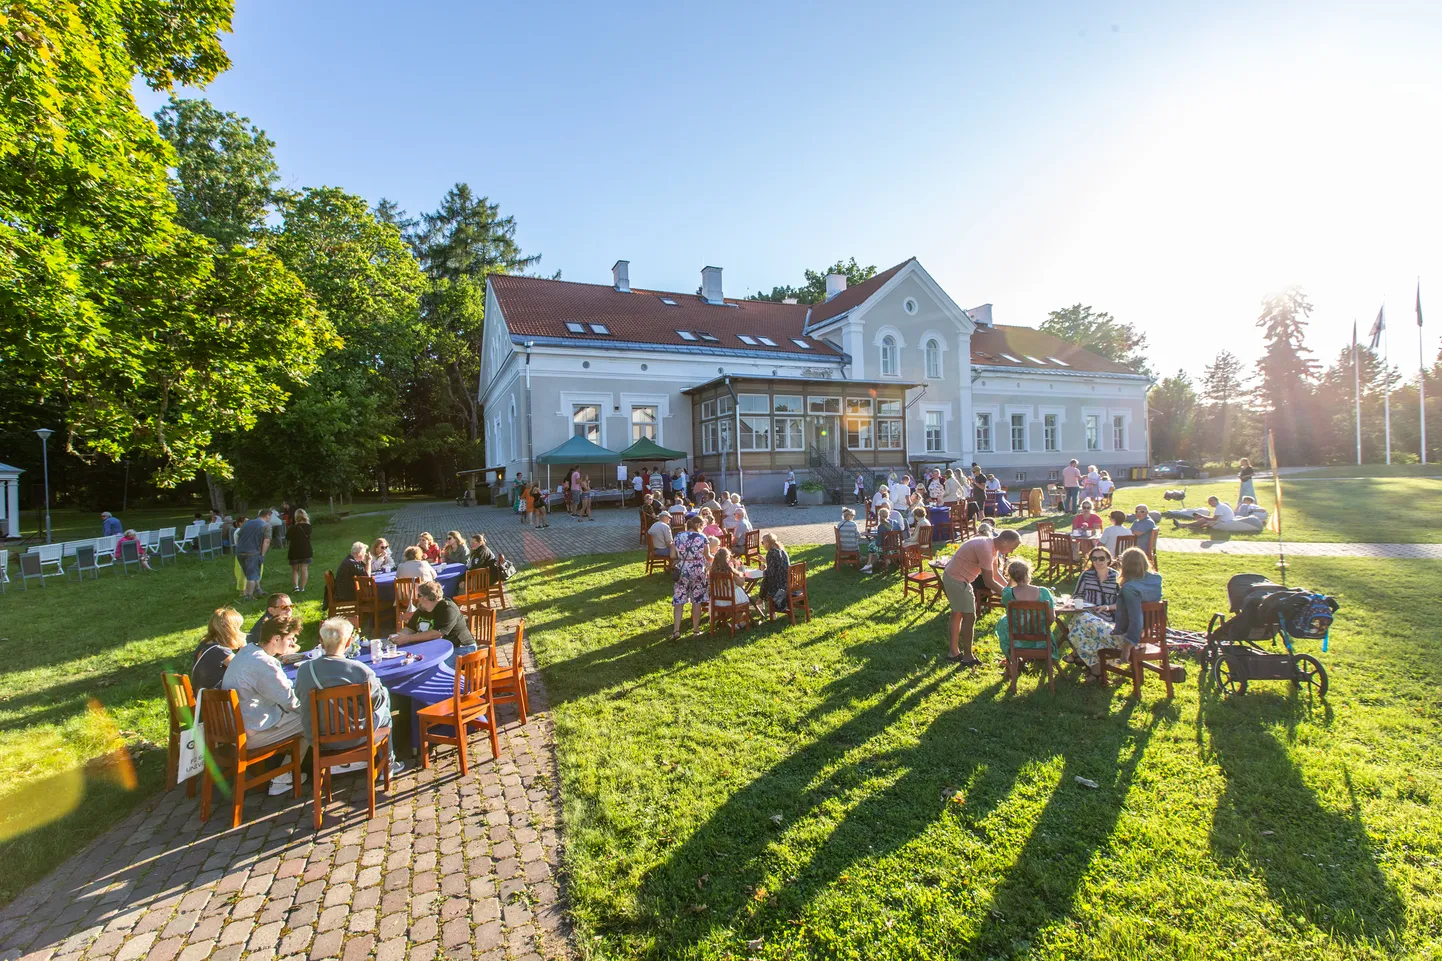 Alutaguse valla mõisakohvikute päev läks eriti täkkesse Illukal, kus külastaja sai osa nii kohvikust, mõisaekskursioonist kui ka kontserdist.